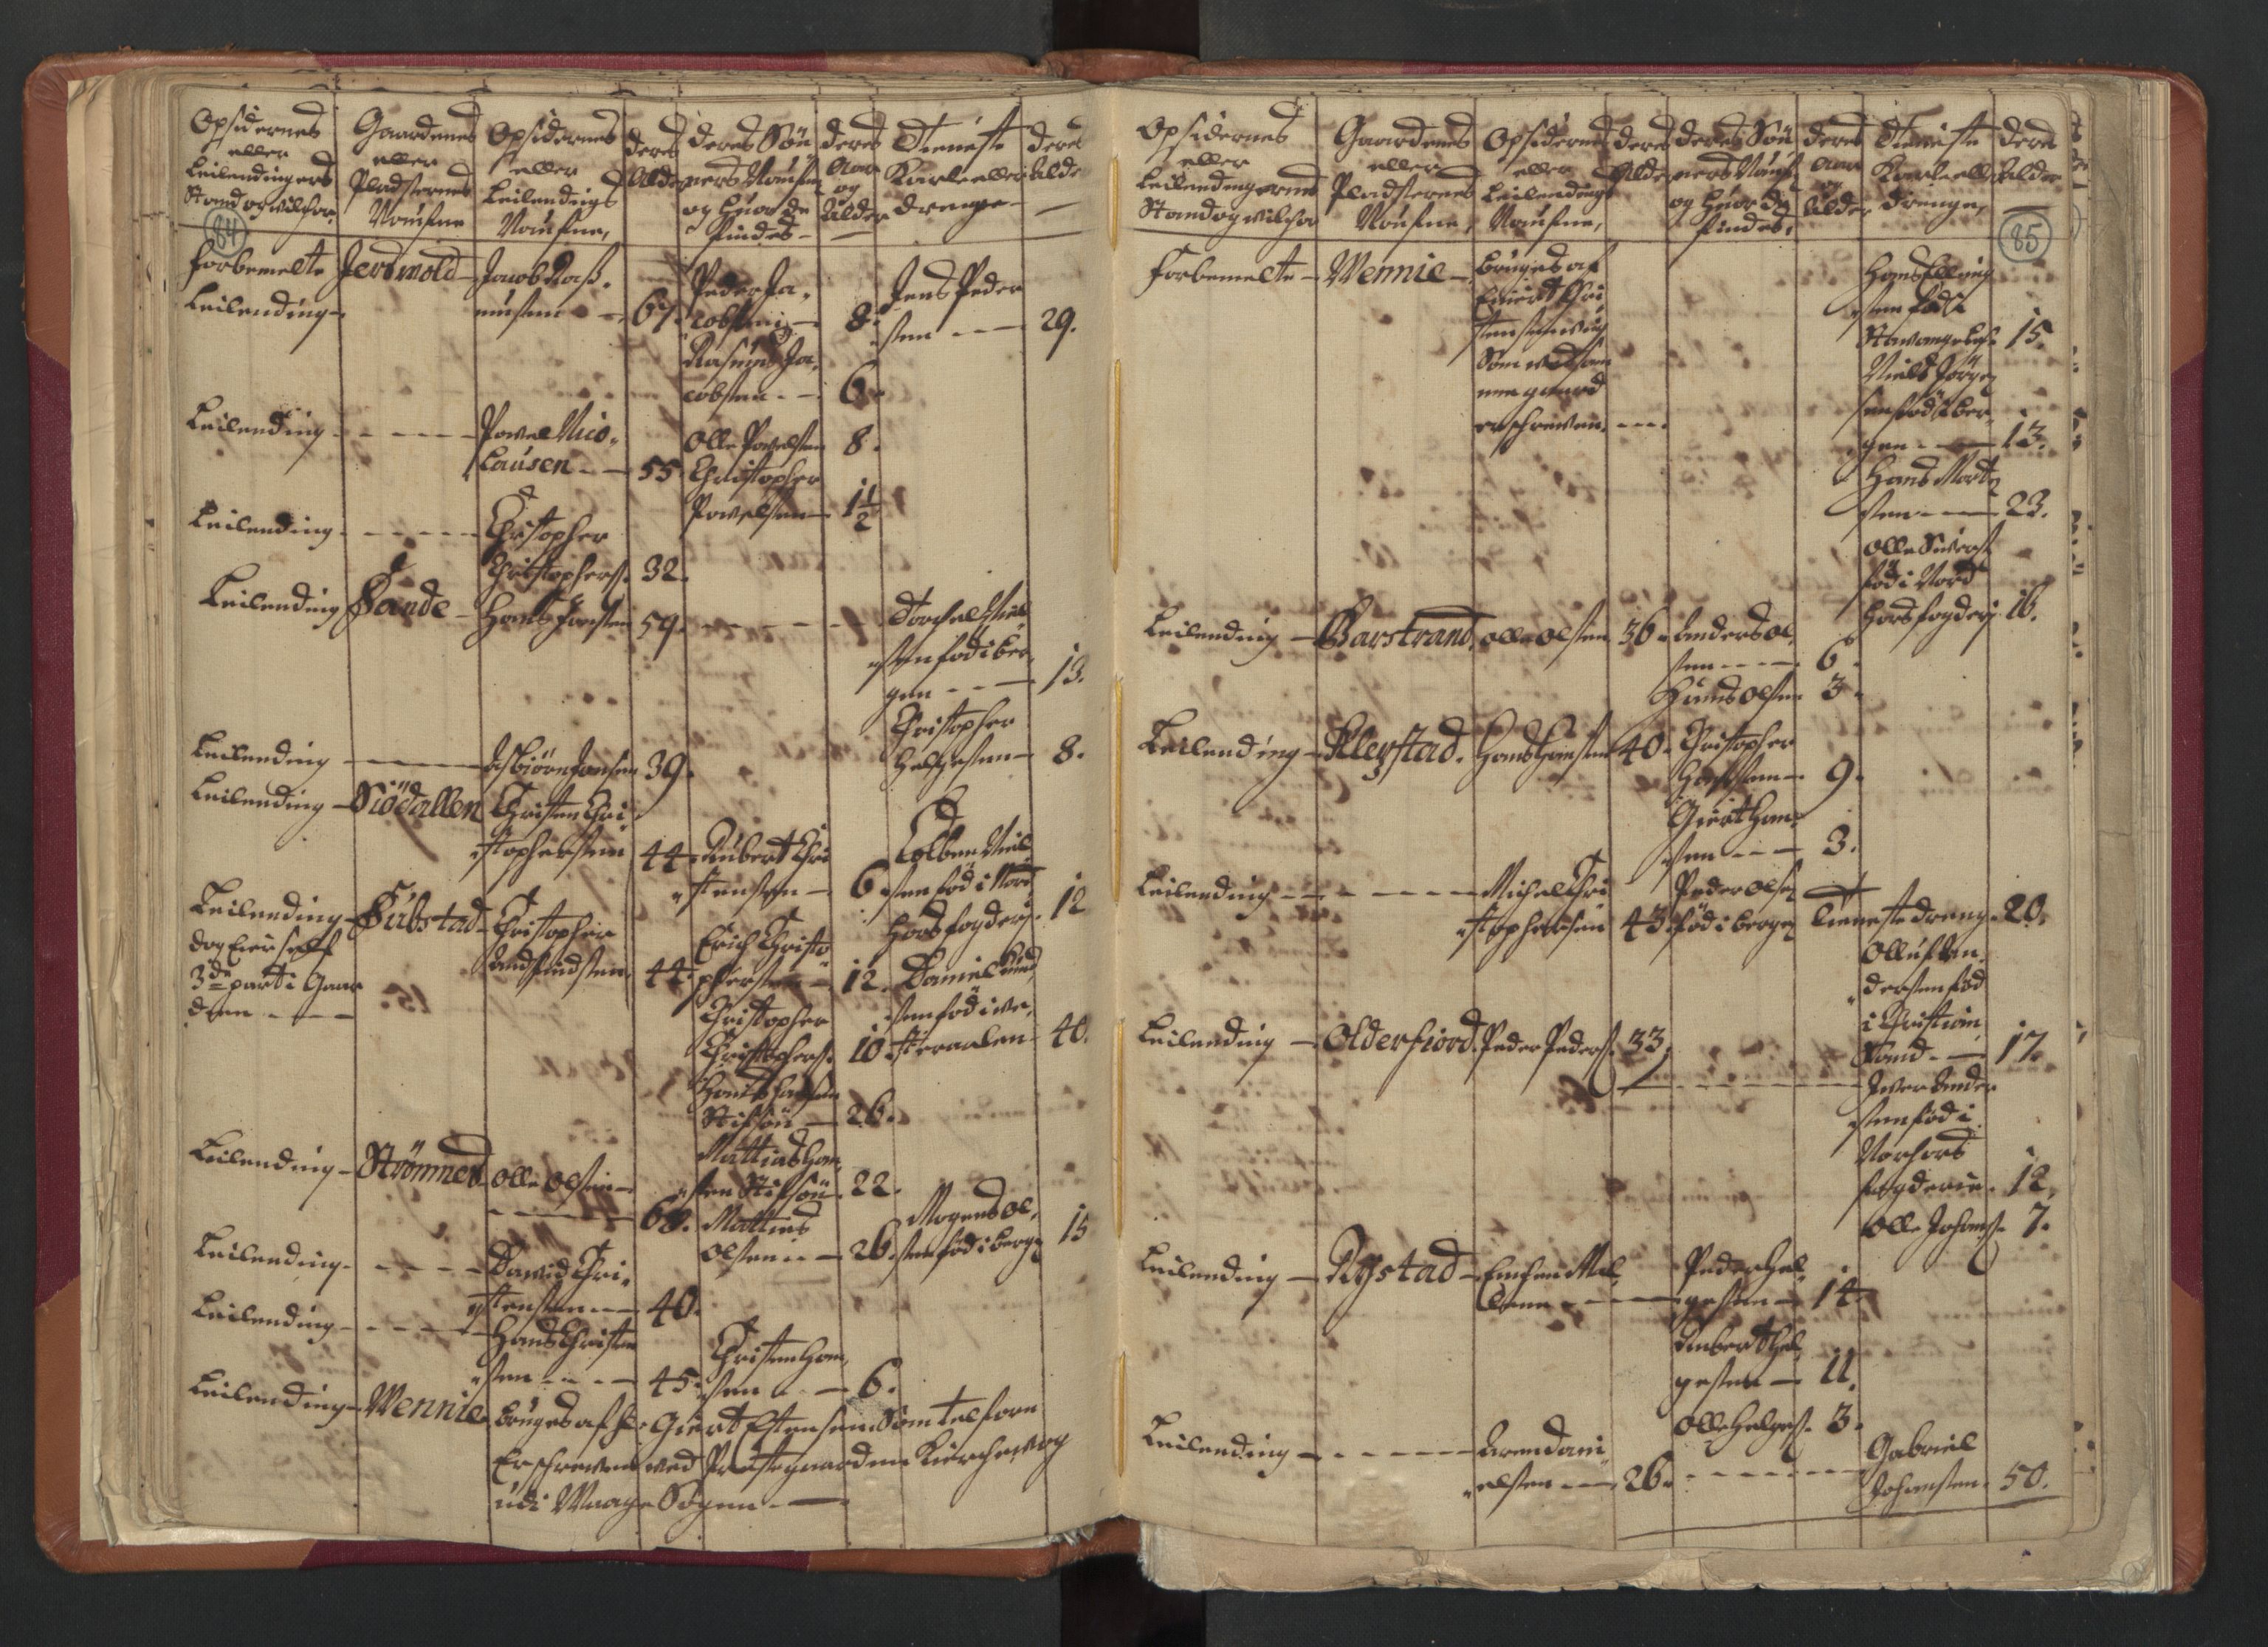 RA, Census (manntall) 1701, no. 18: Vesterålen, Andenes and Lofoten fogderi, 1701, p. 84-85